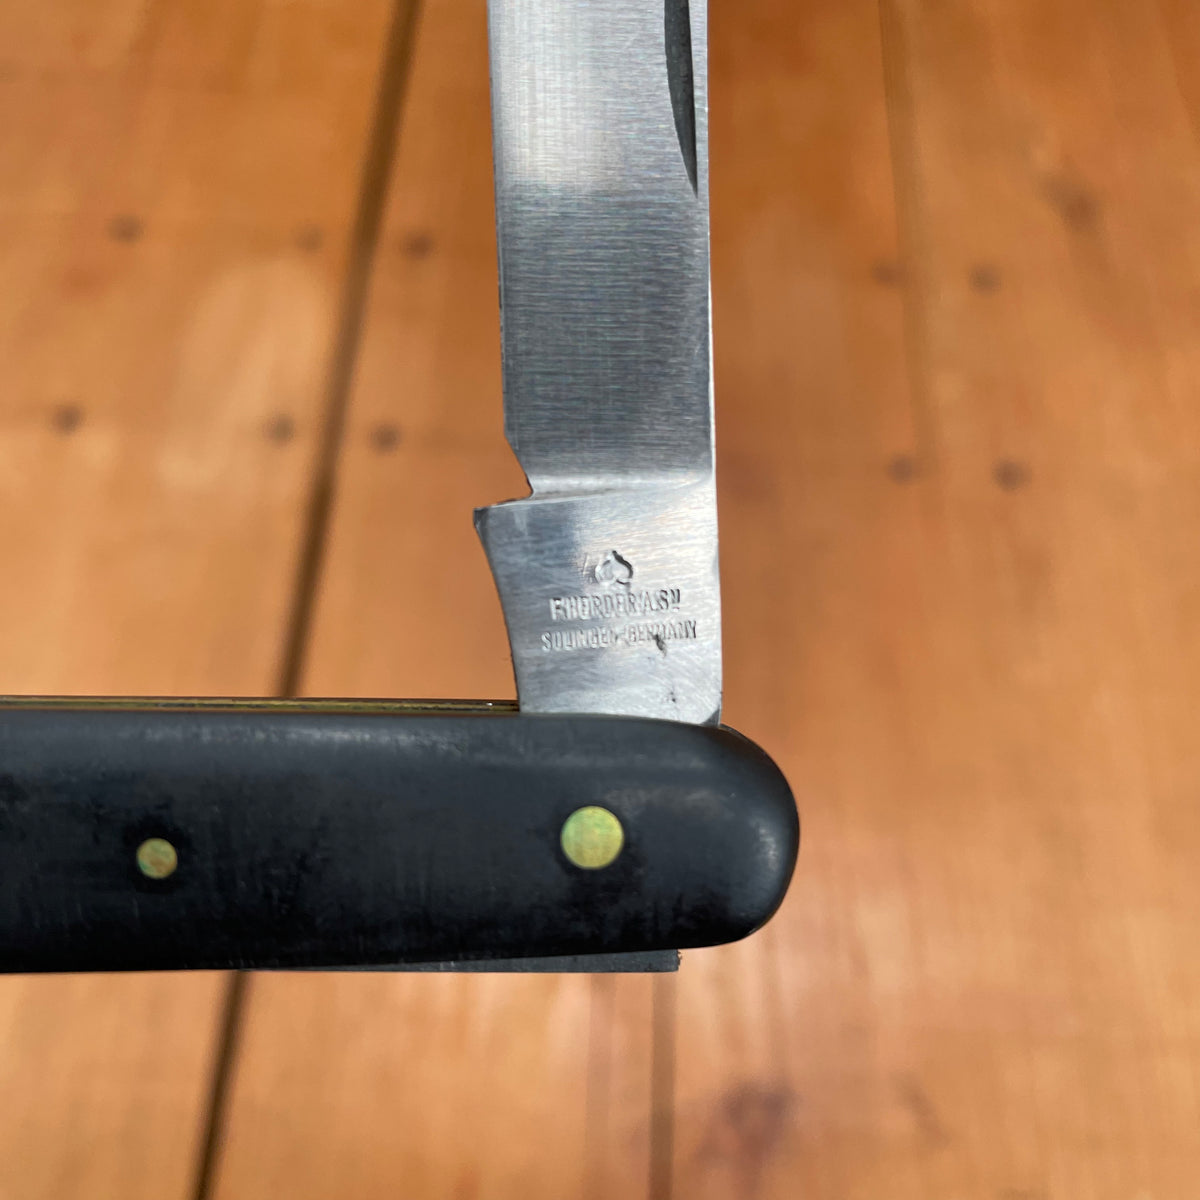 New Vintage Friedr Herder 4 Grafting Knife Solingen – Bernal Cutlery